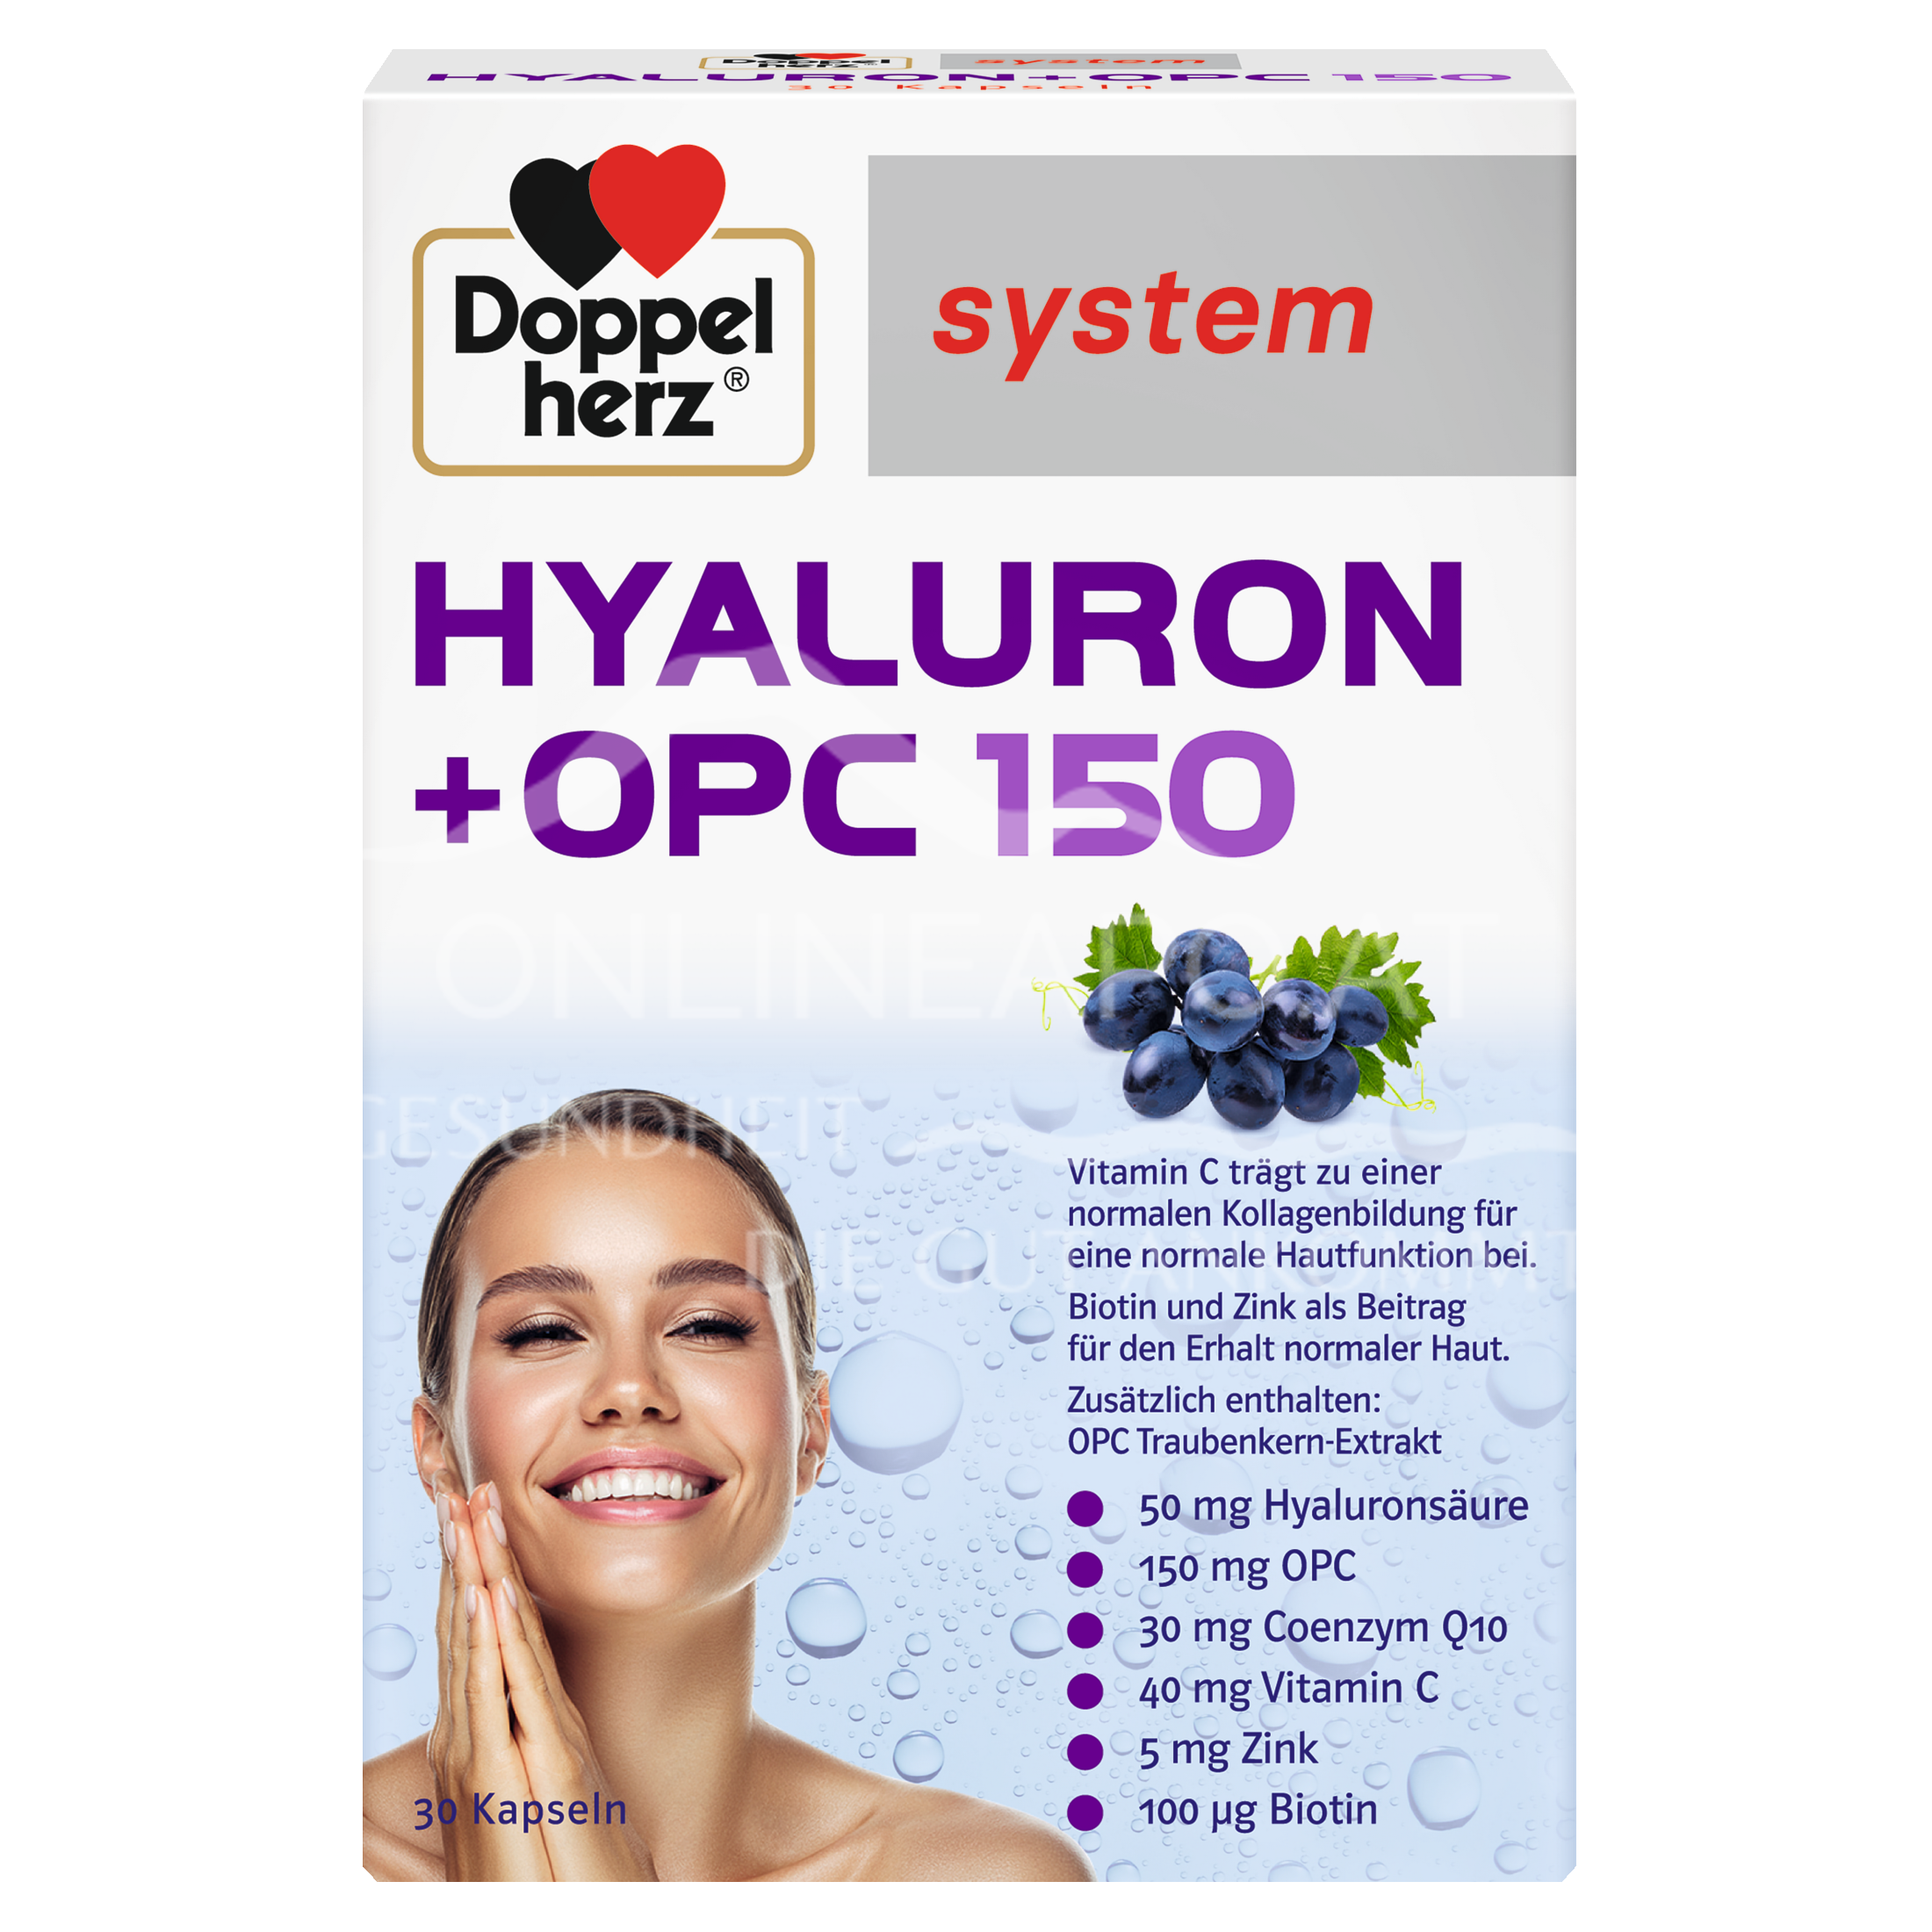 Doppelherz system Hyaluron + OPC 150 Kapseln